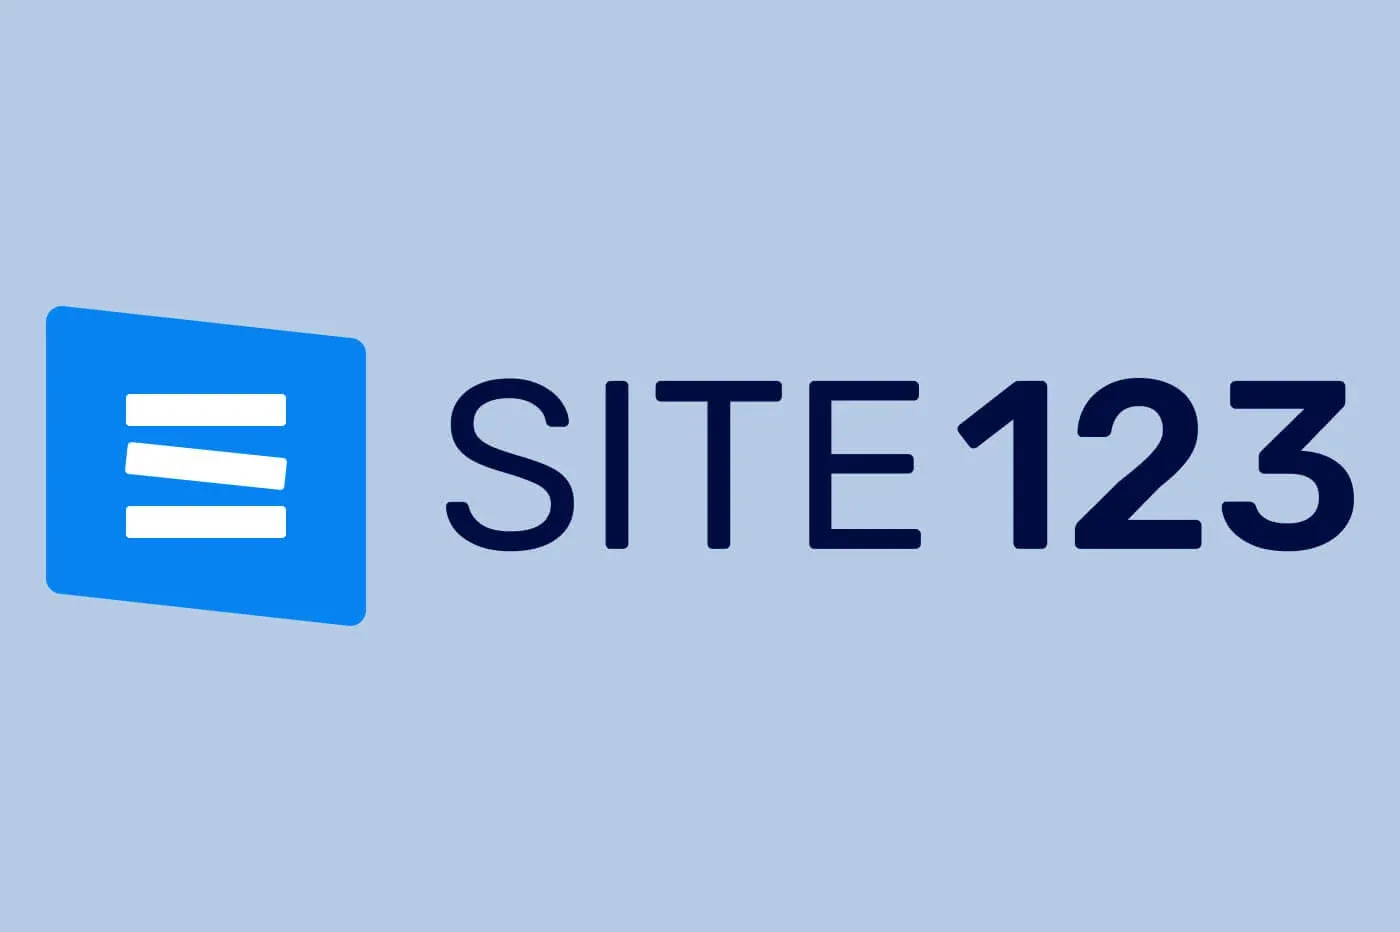 SITE123